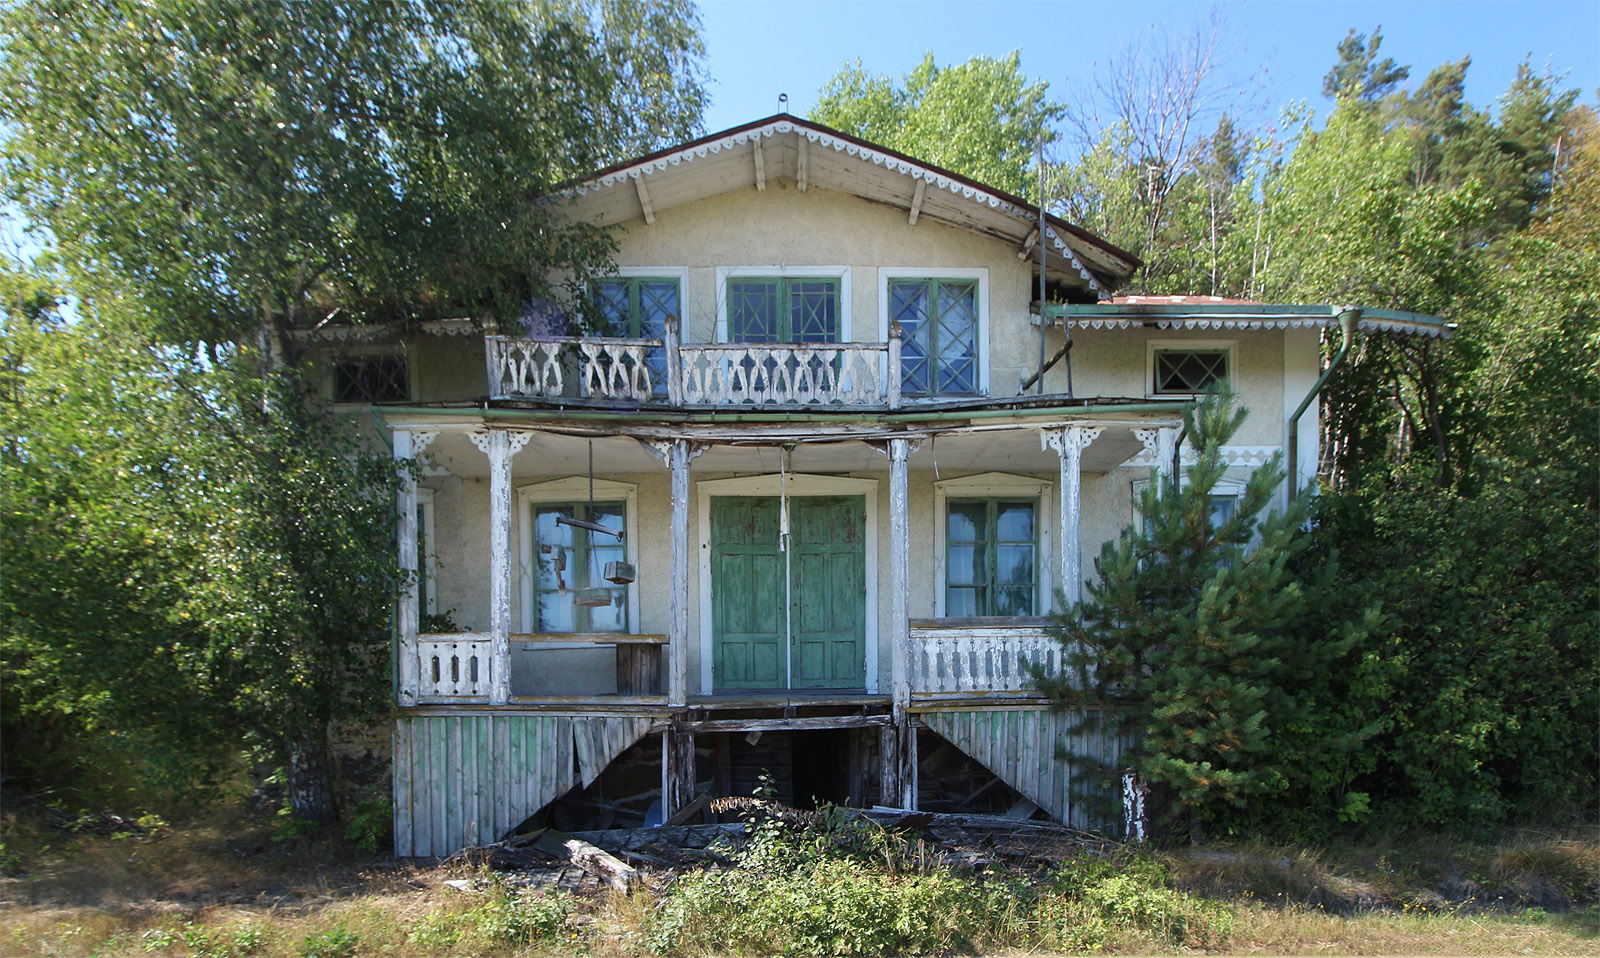 Honosná fasáda opuštěného domu v Långrådně zaujme kolemjdoucí svojí malebnou zpustlostí. Dům vypadá z hlavní ulice větší než opravdu je díky relativně malým oknům a dvěřím.